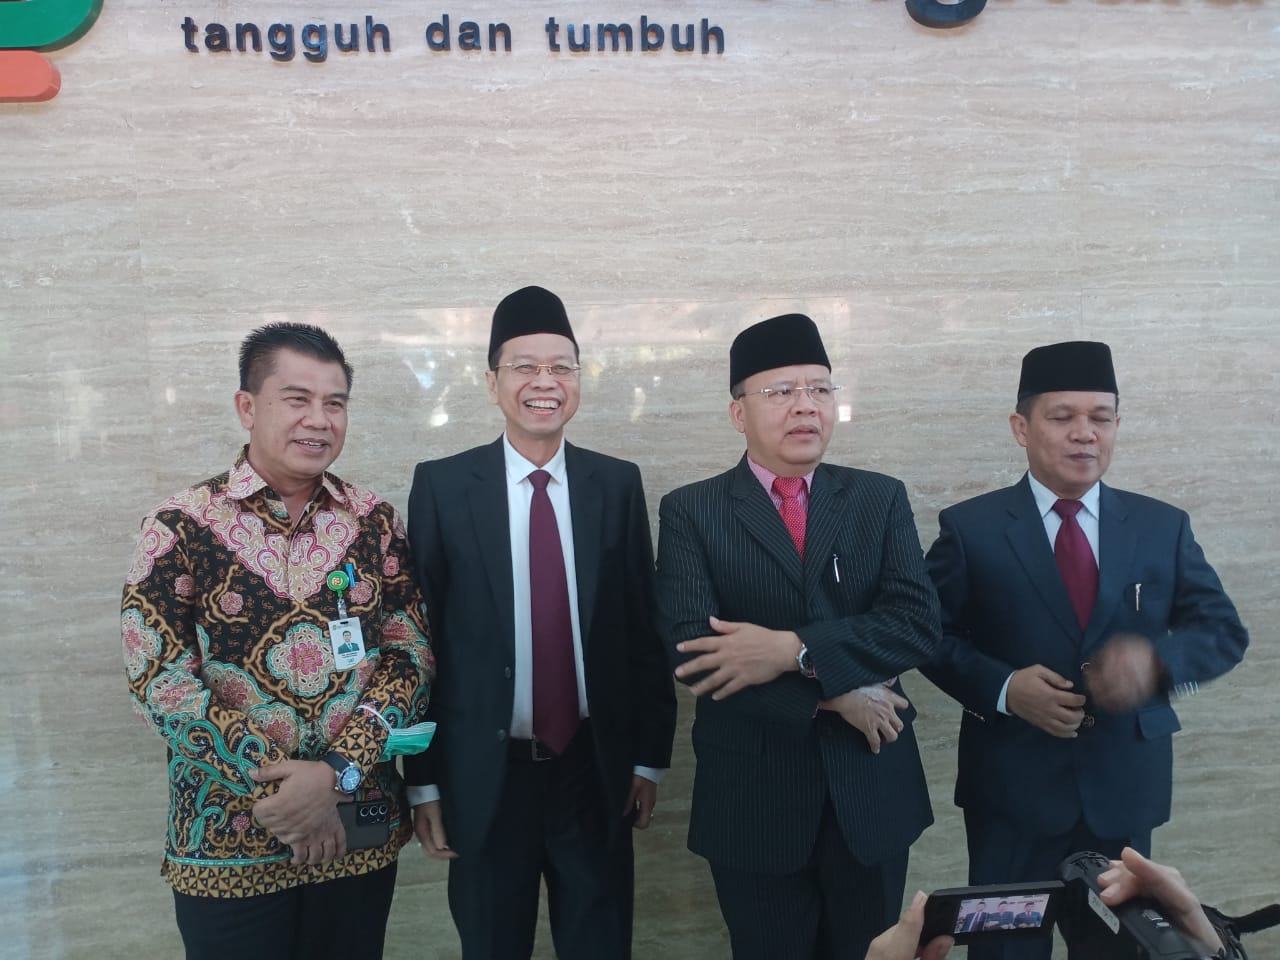 Mantan Dirut BJB Ahmad Irfan Resmi Jabat Dirut Bank Bengkulu, Ini Program Prioritasnya